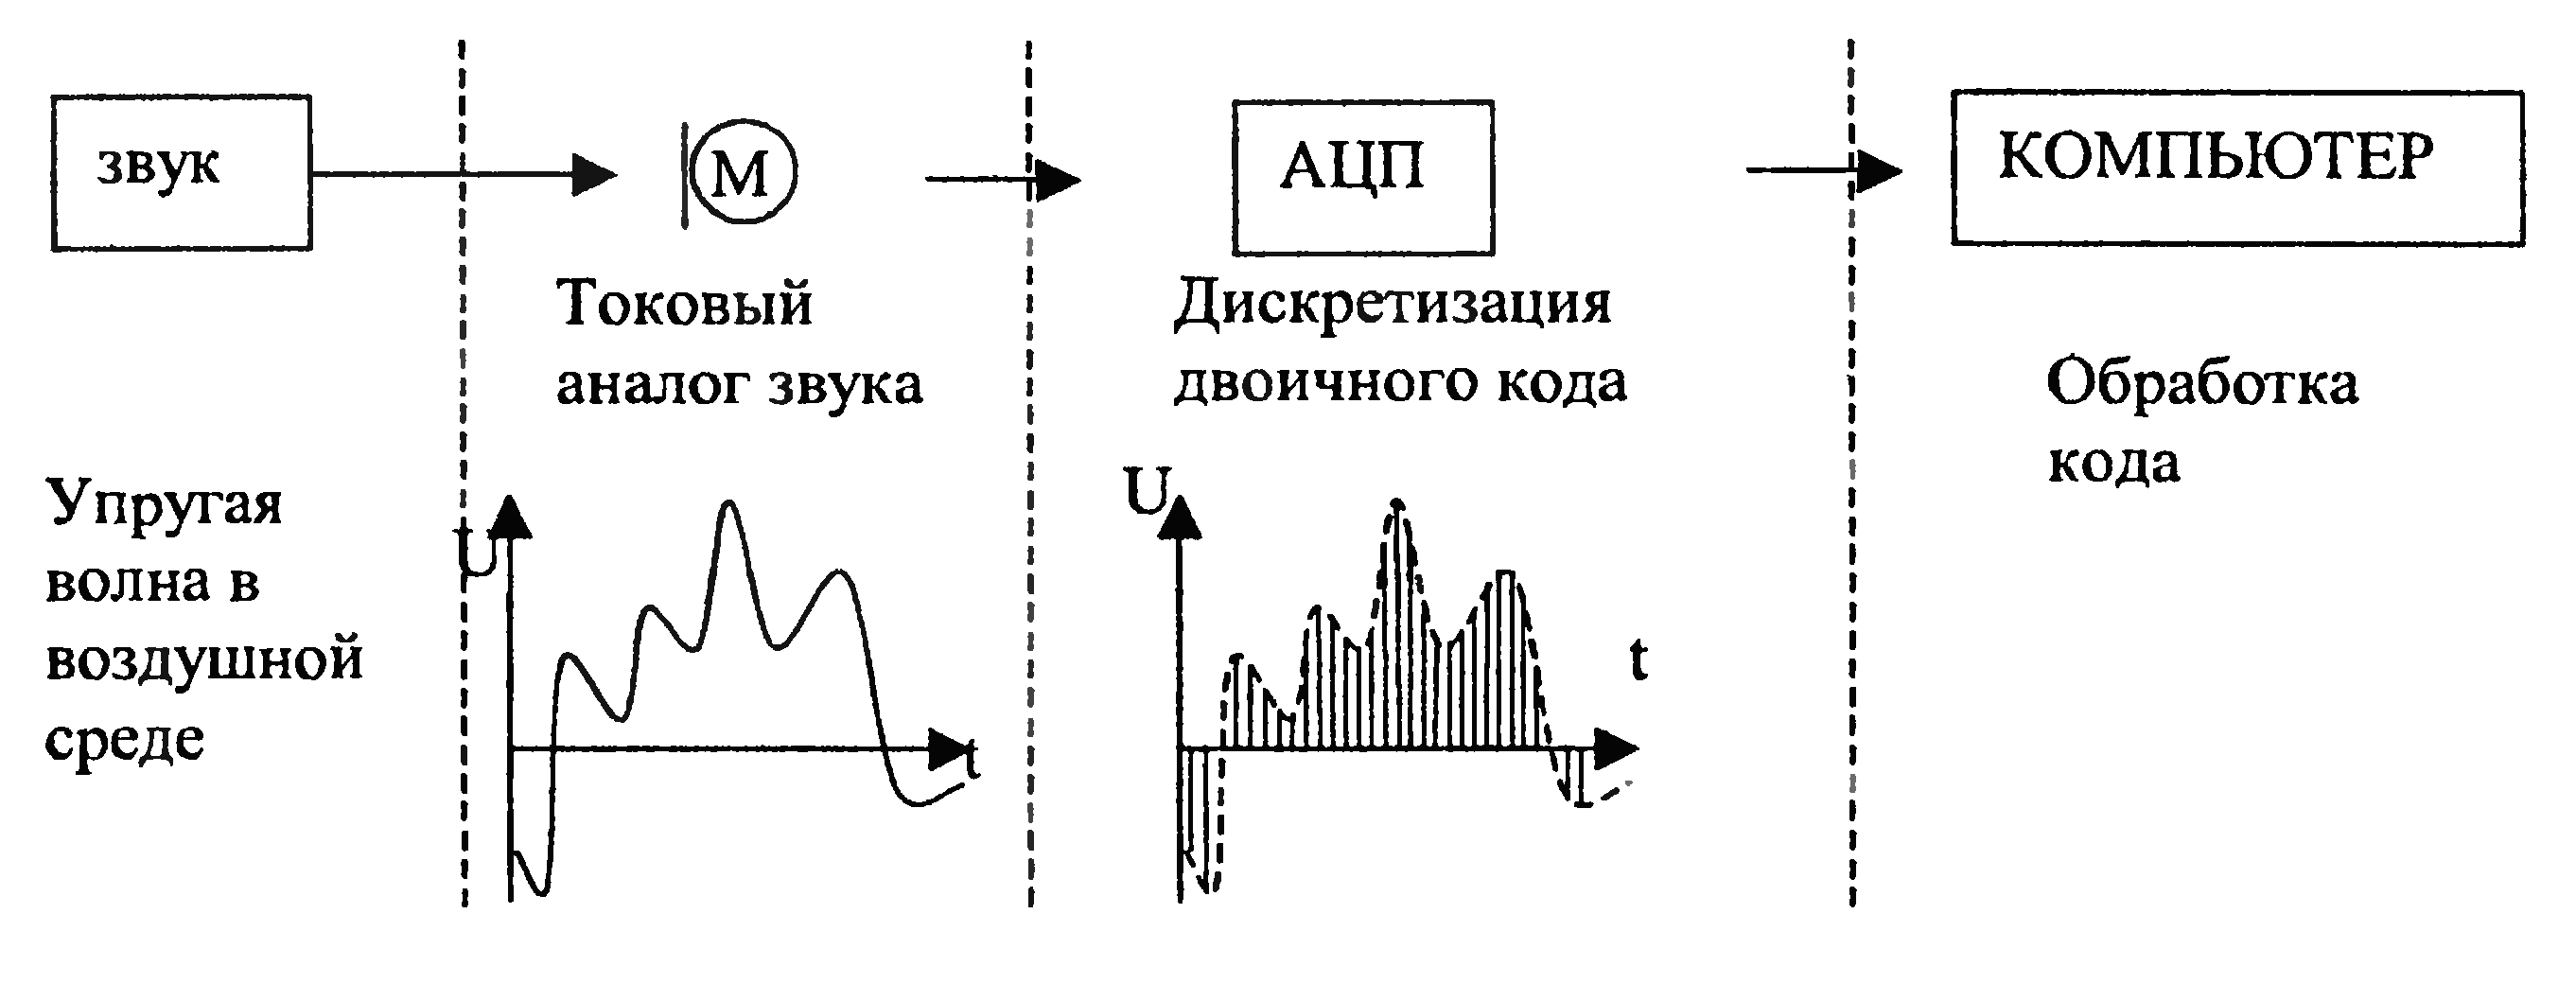 Аналогово цифровое преобразование звука. Схема частотной обработки аналоговых сигналов. Кодирование аналогового звукового сигнала. Обработка звука схемы. Представление аналогового сигнала и дискретного схема.